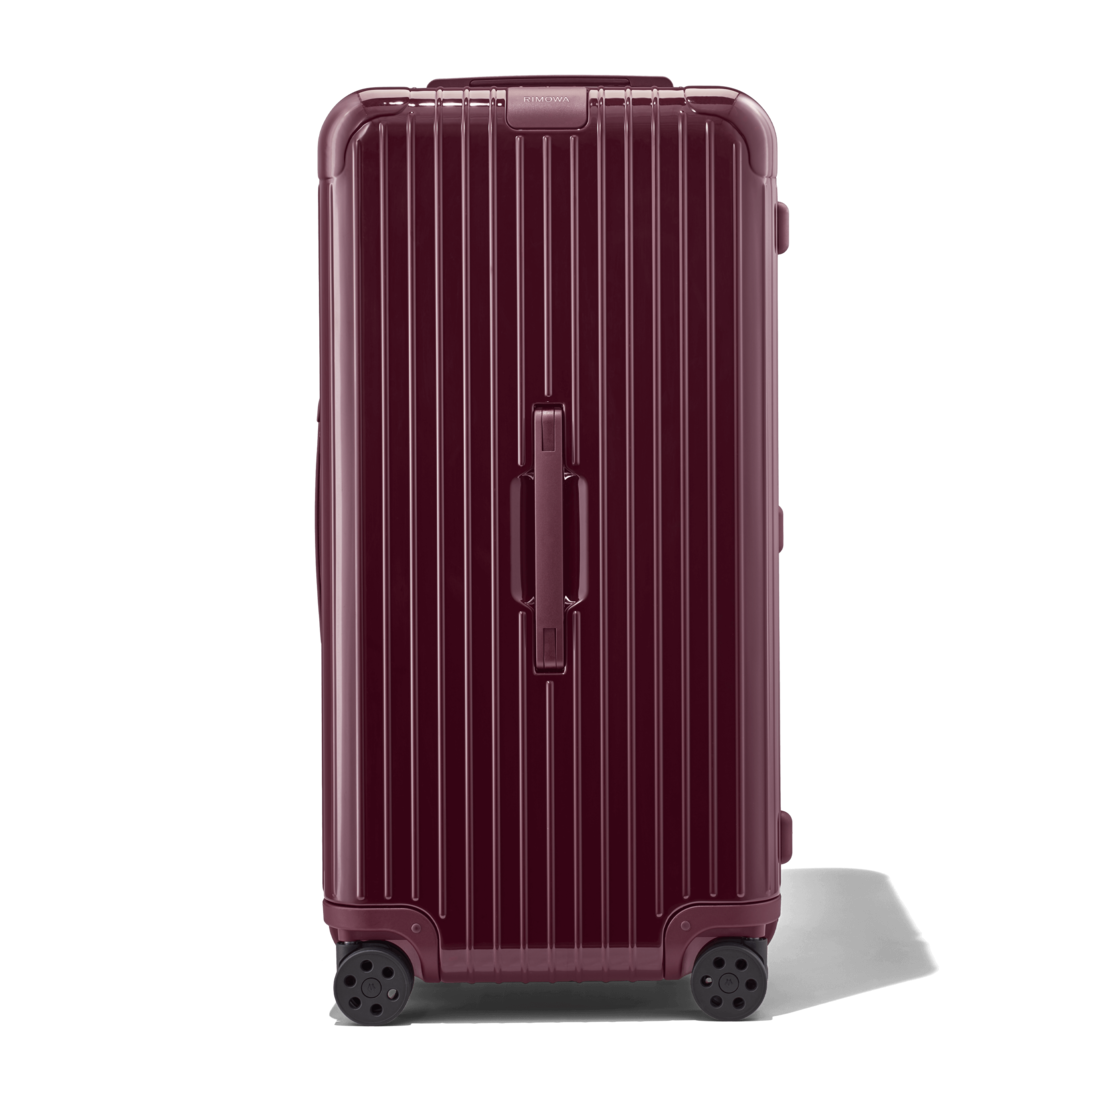 rimowa luggage large size